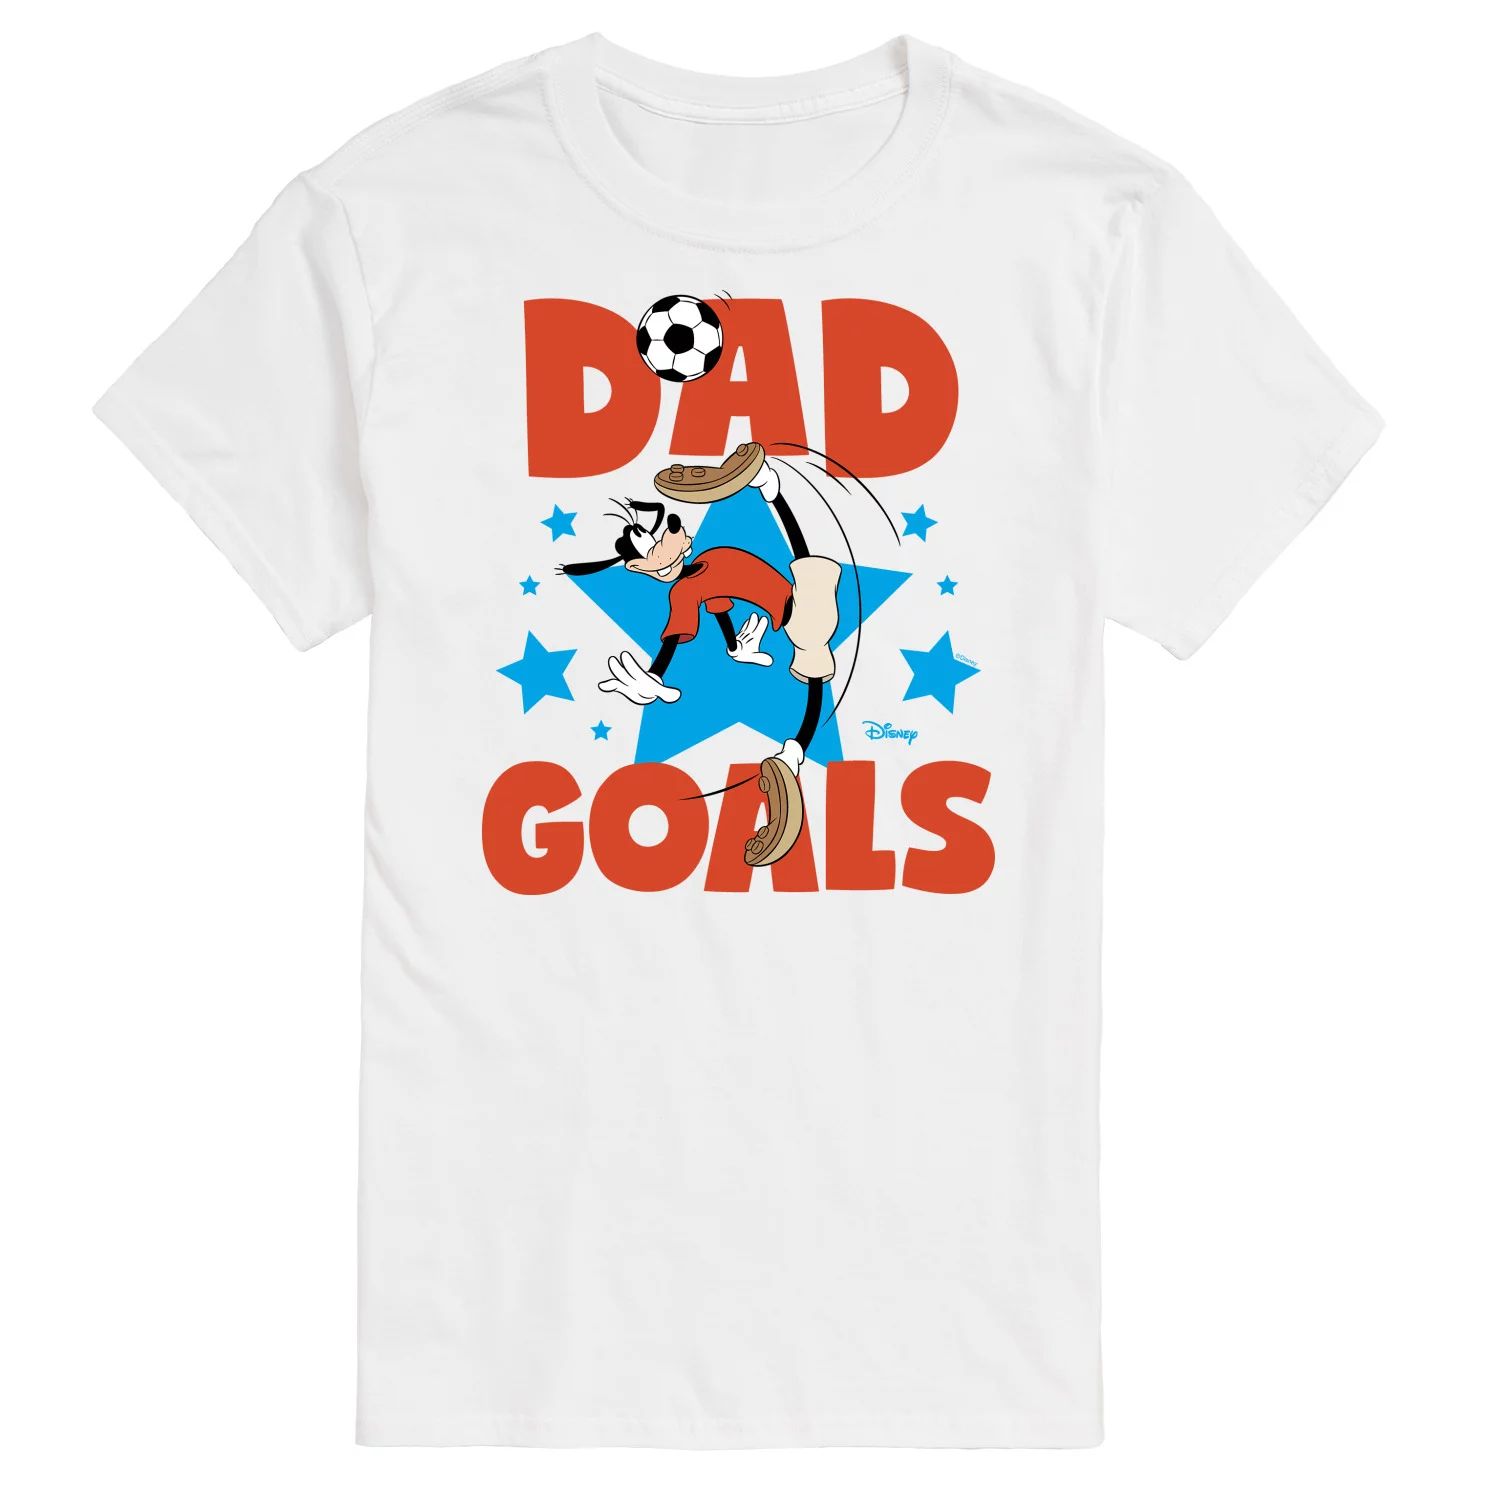 Мужская футболка Disney's Goofy Dad Goals с графическим рисунком